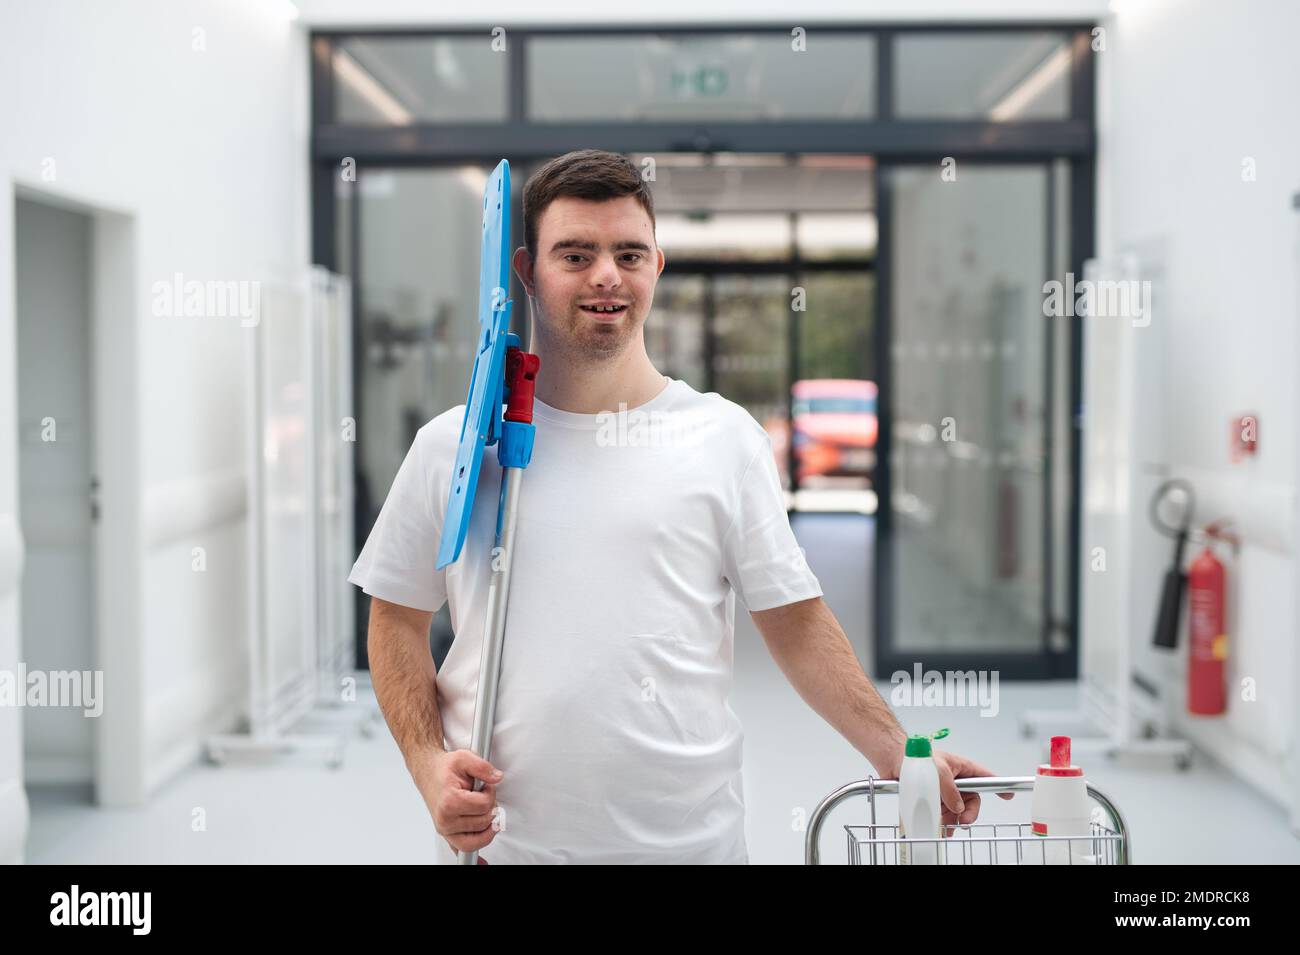 Junger Mann mit Down-Syndrom, der als Reiniger in einem Krankenhaus arbeitet. Das Konzept der Integration von Menschen mit Behinderungen in die Gesellschaft. Stockfoto